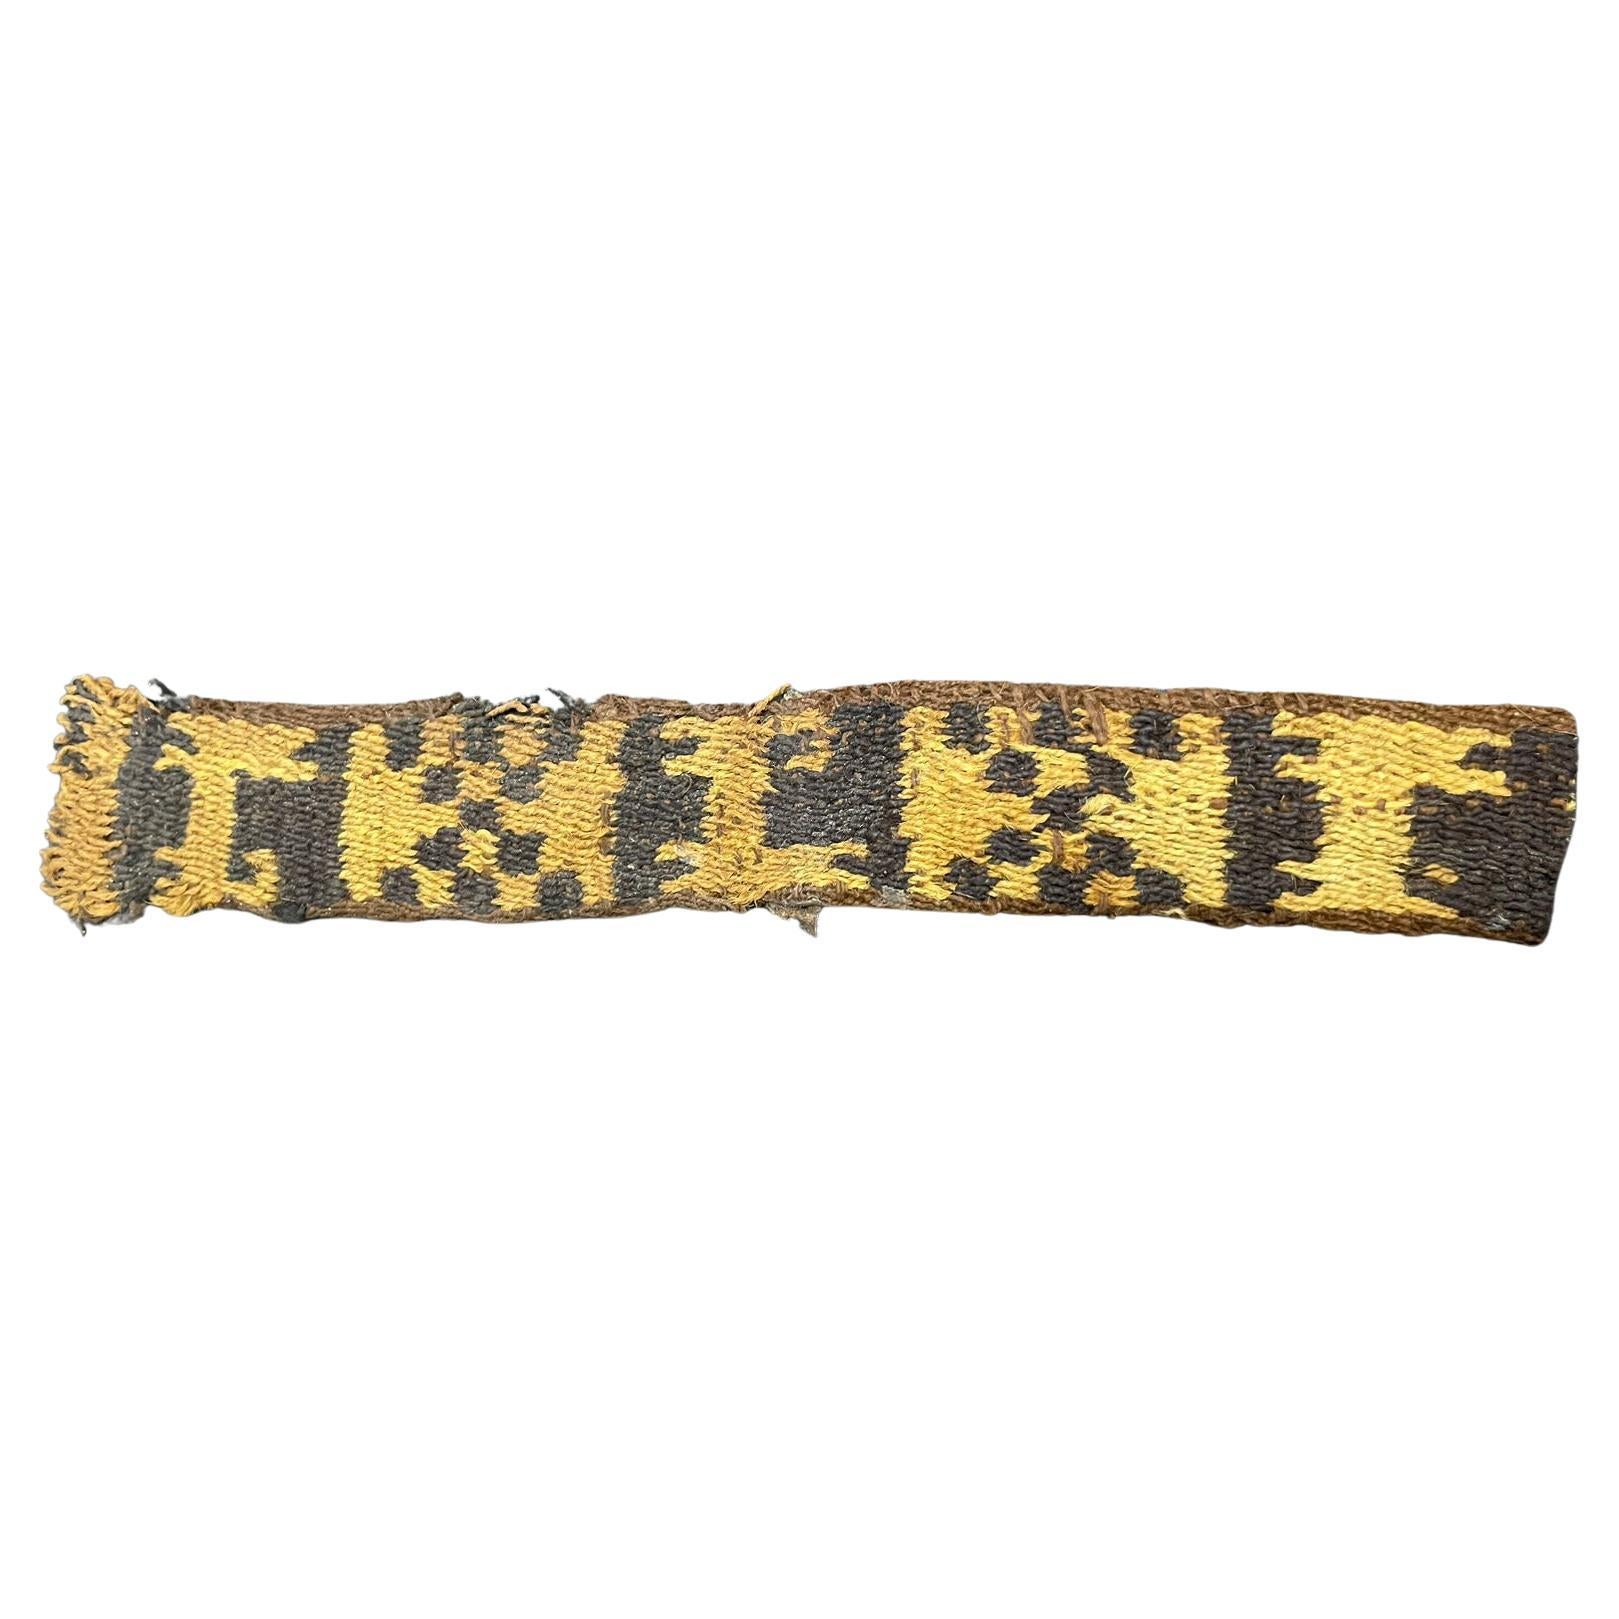  Präkolumbisch  Inka-Textilfragment aus Textilien – Peru, Ex Ferdinand Anton